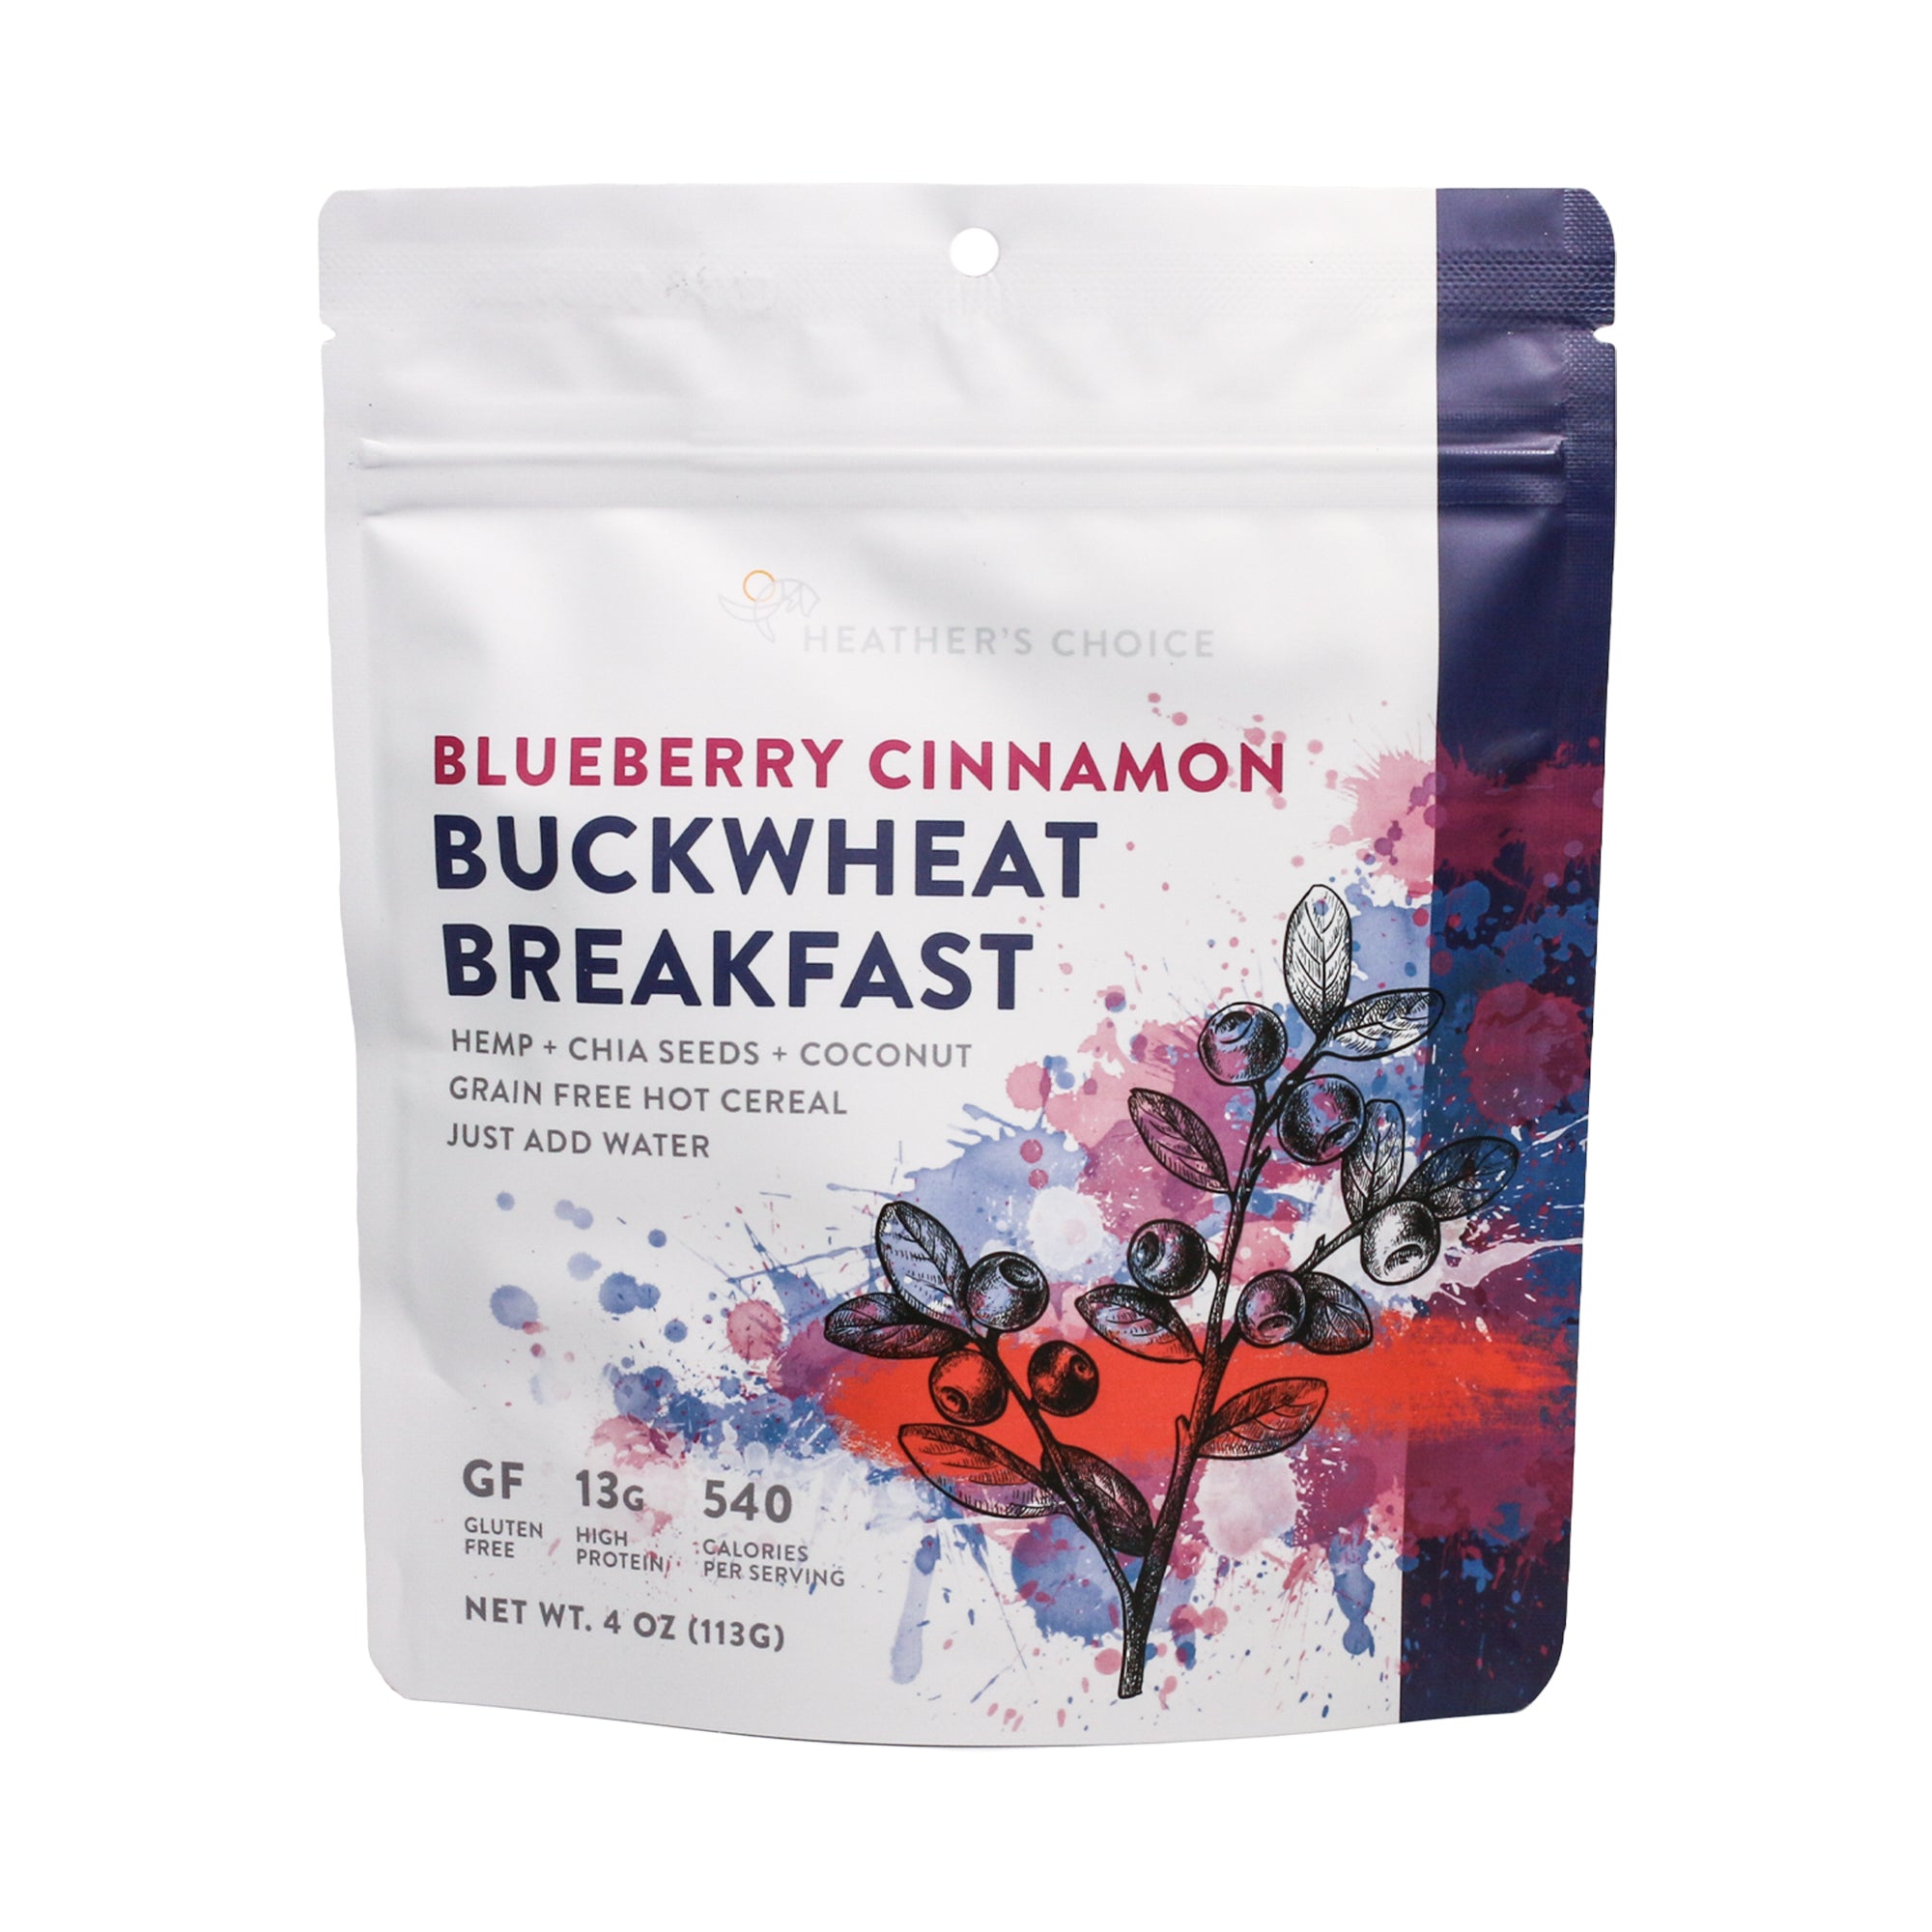 Blueberry Cinnamon Buckwheat Breakfast dehydrated meal - frontside of pouch